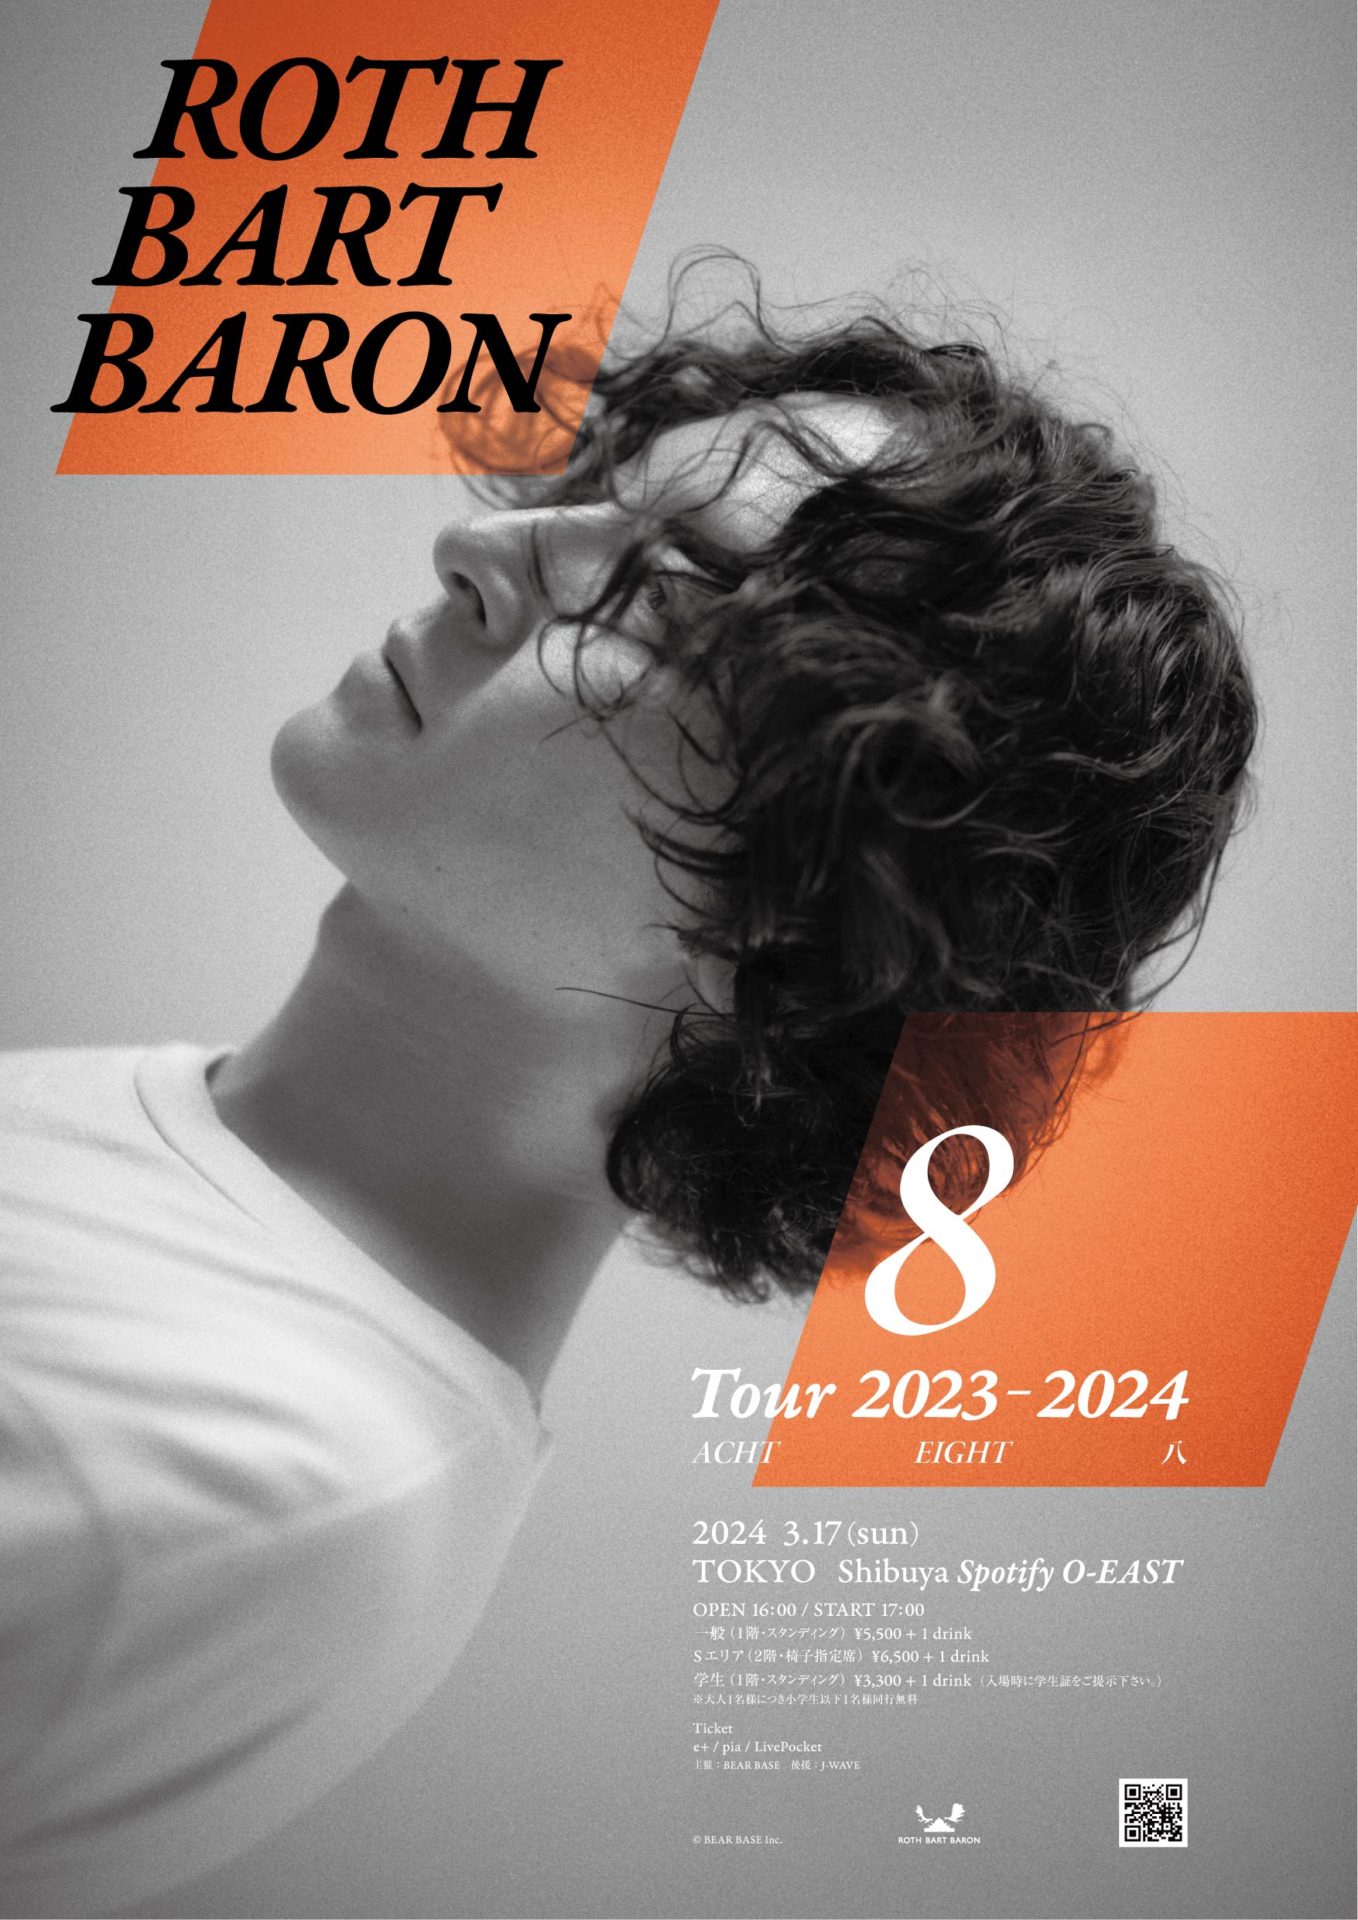 ROTH BART BARON『8』TOUR 2023-2024